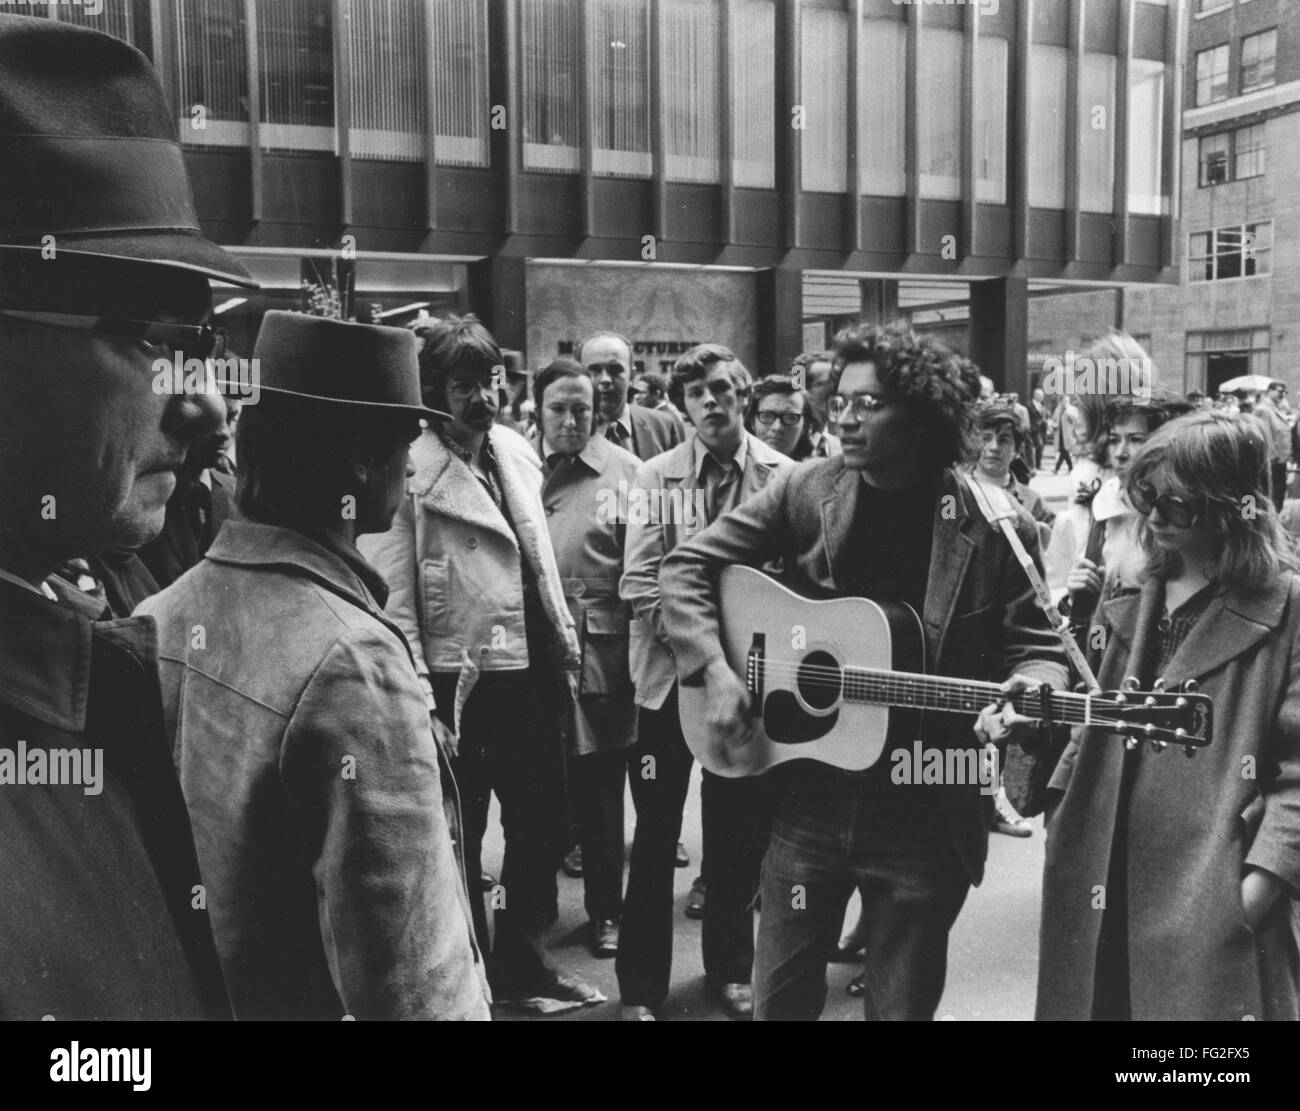 Premier jour de la terre, 1970. /NPeople recueillir sur Madison Avenue à New York le 22 avril 1970 pour célébrer le premier jour de la Terre. Plein crédit : Richard Busch / Granger, NYC -- Tous les rightsw New York. Banque D'Images